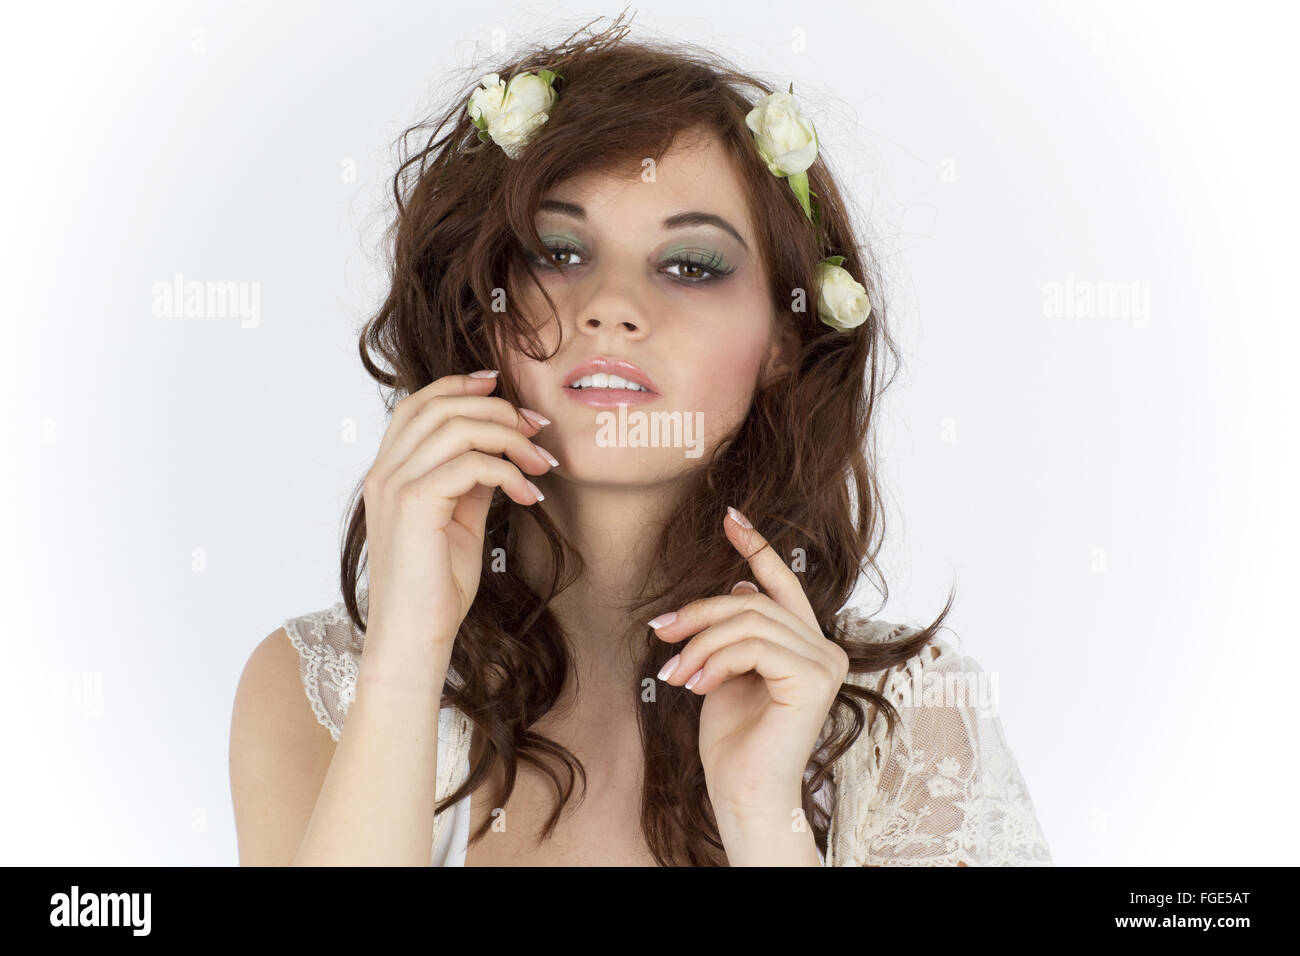 Jeune femme avec arrangement floral comme une coiffe Banque D'Images